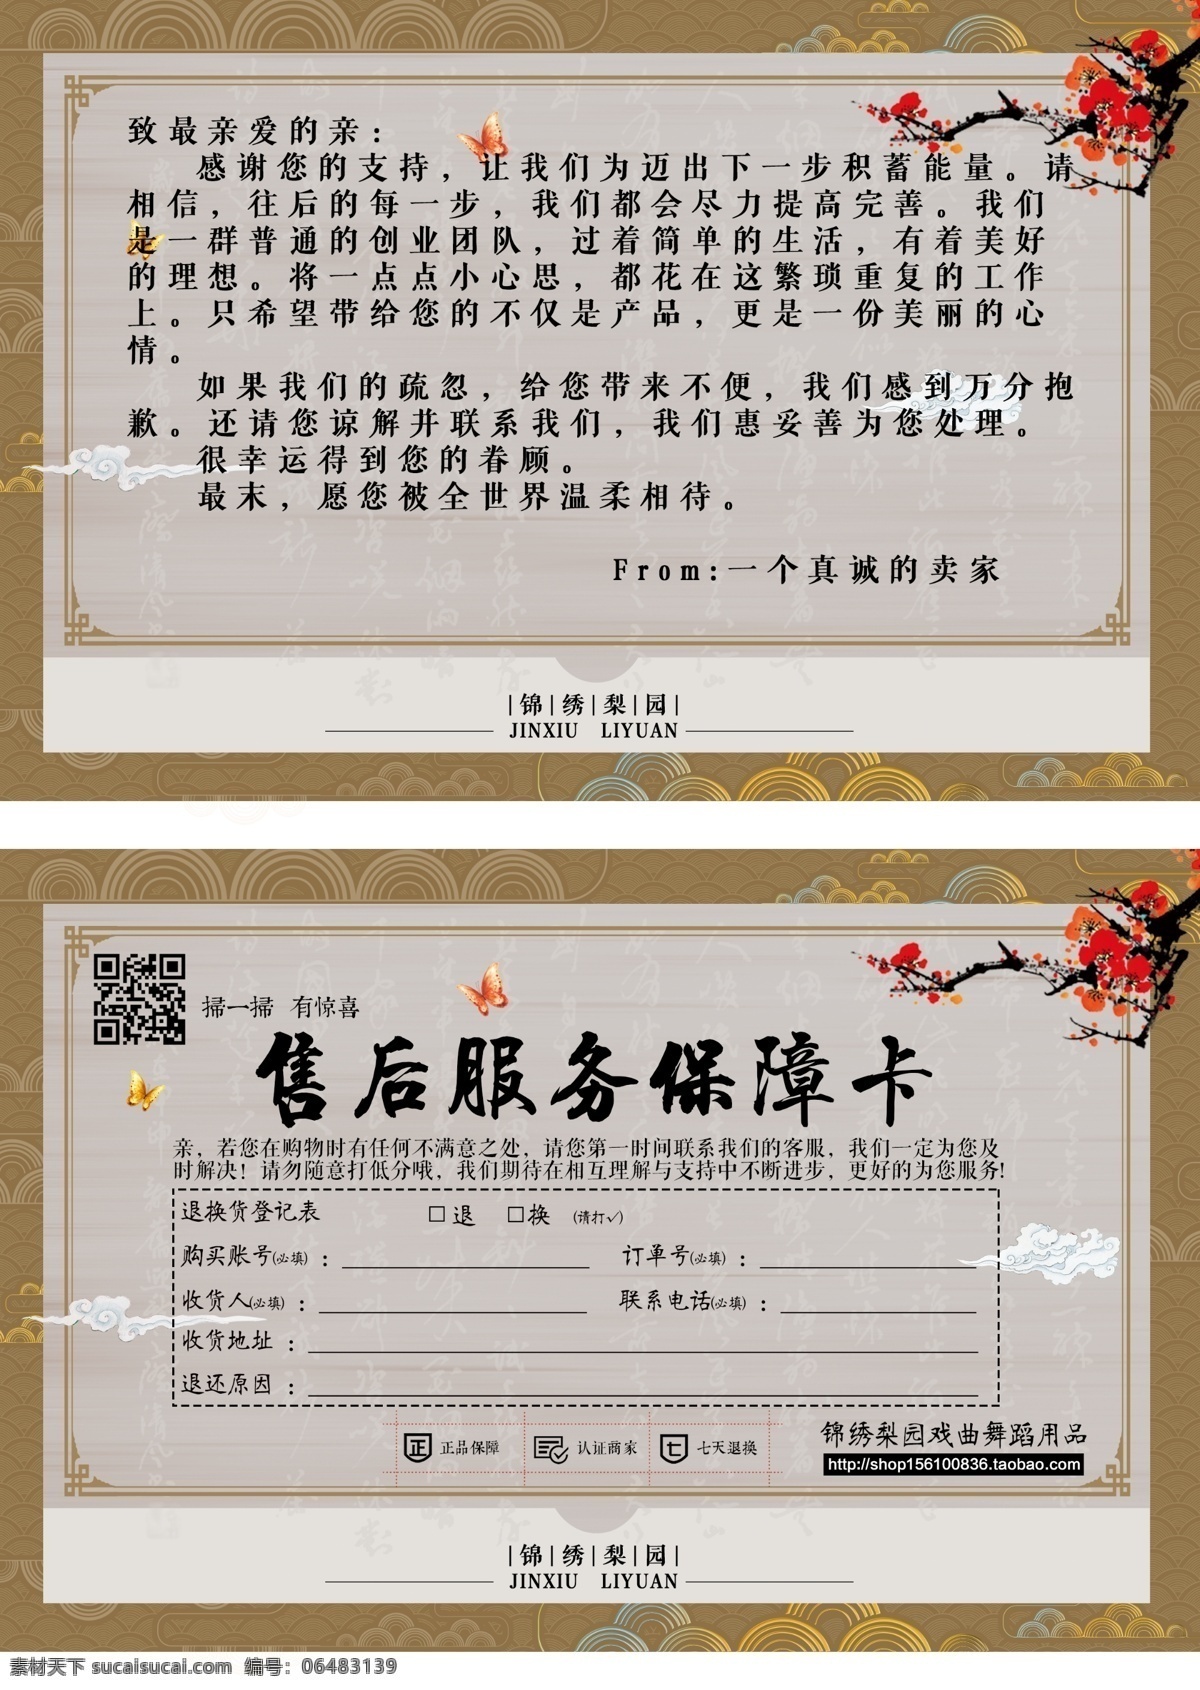 中国古代婚礼 新娘 新郎 卡通 矢量 ai格式01 ai格式 设计素材 传统婚礼 中华图典 矢量图库 红色